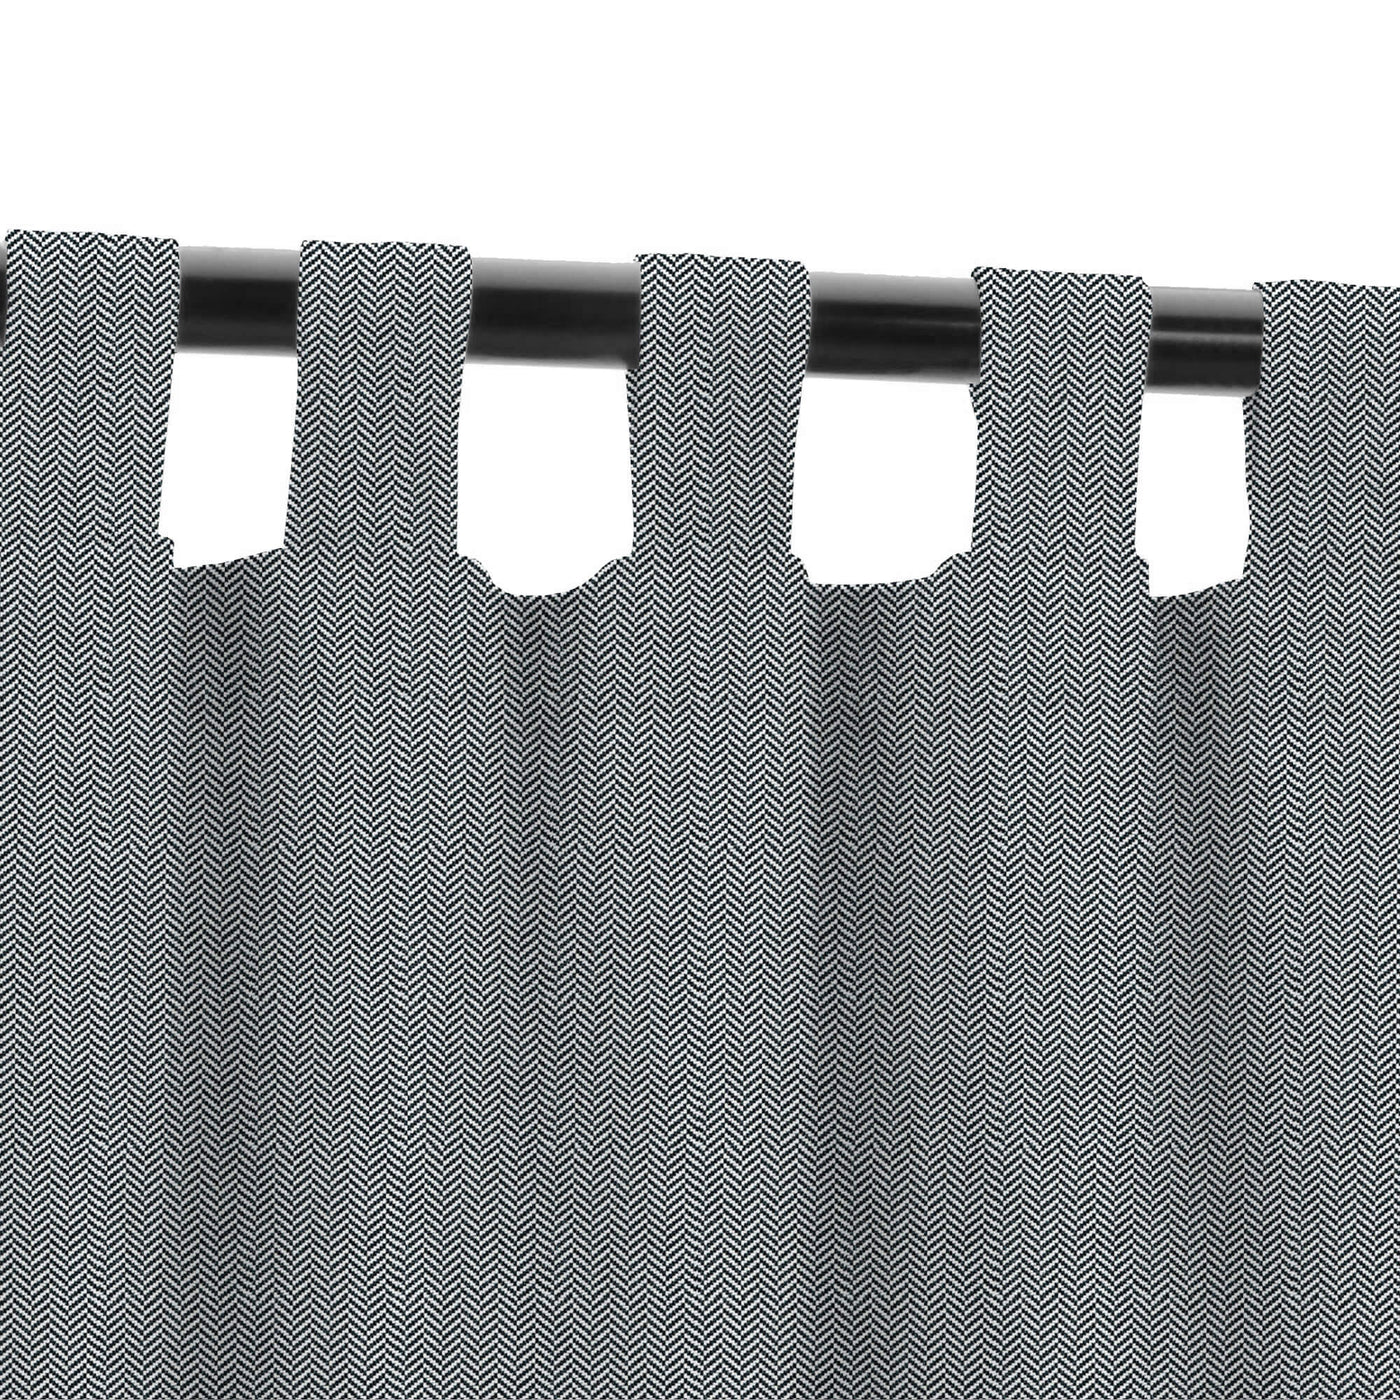 PENGI Outdoor Curtains Waterproof- Herringbone Black